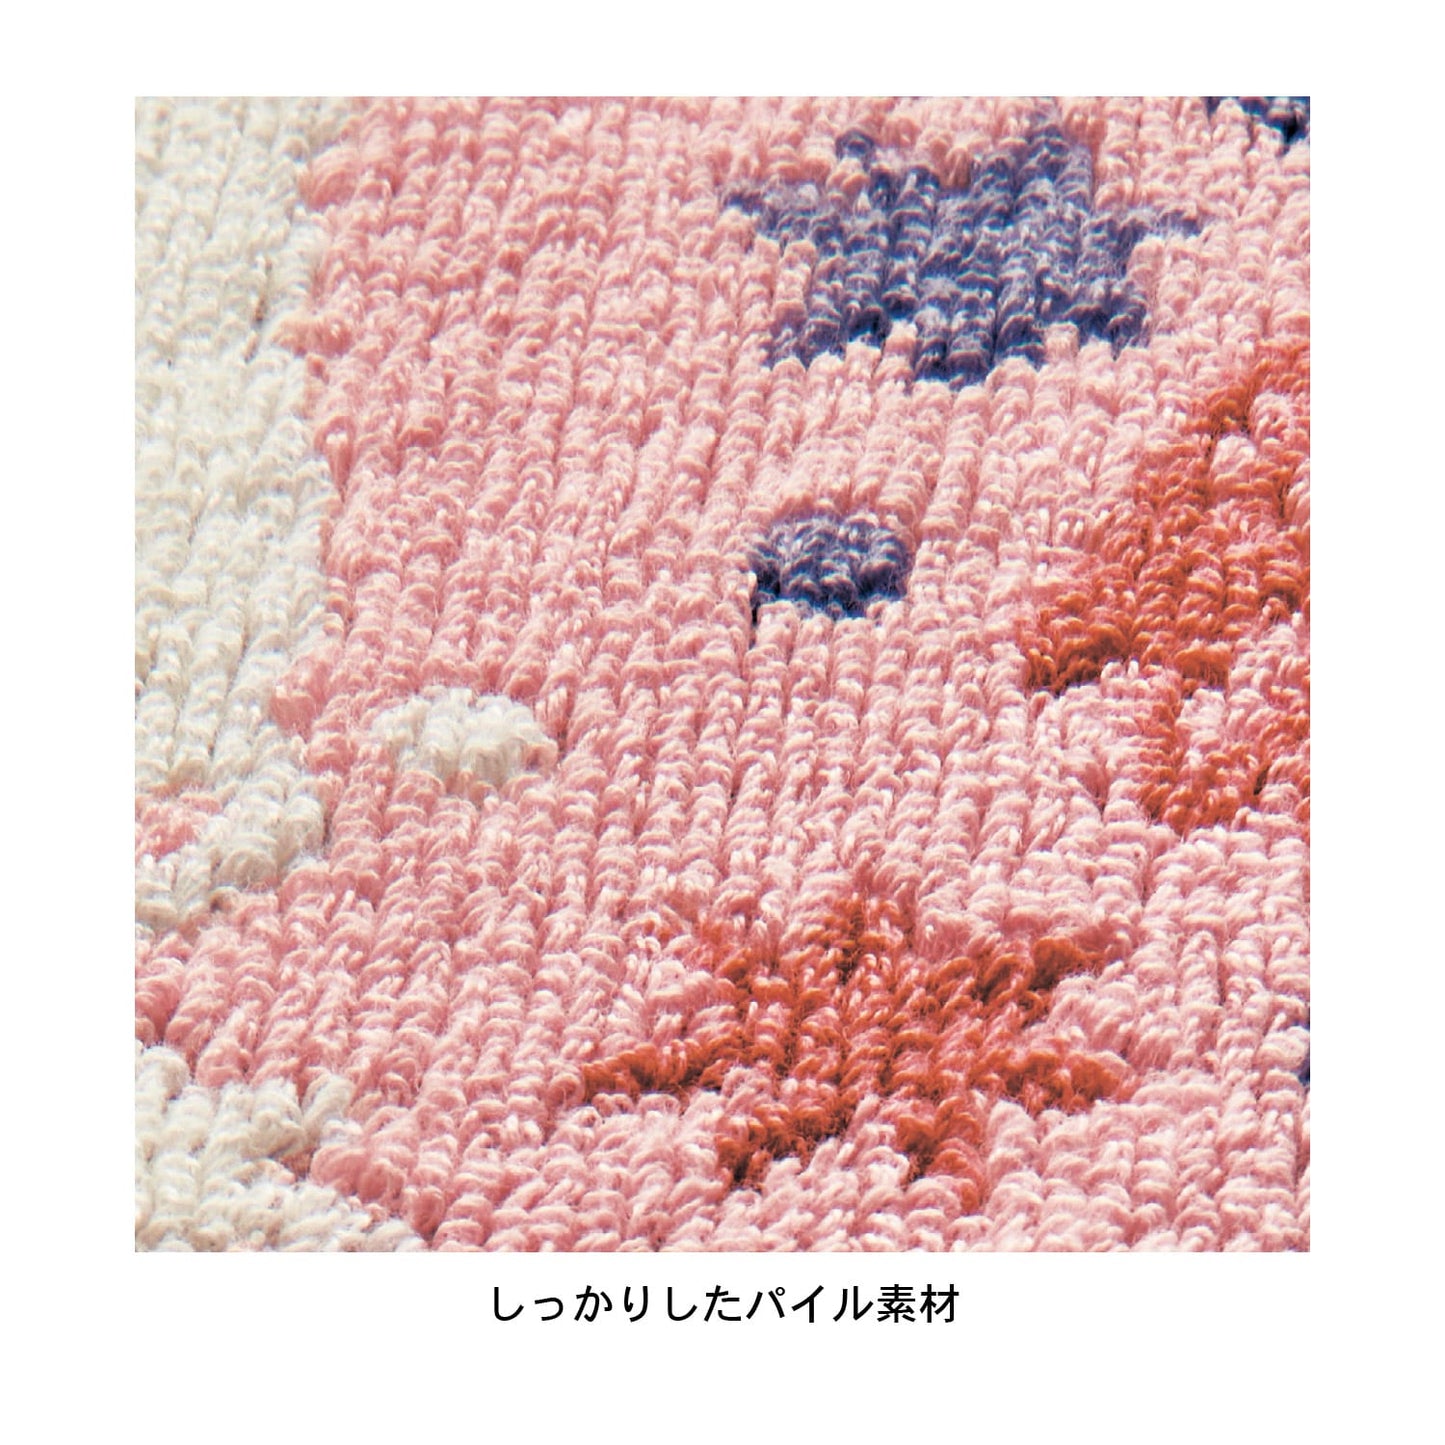 Moomin carpet 2 pcs (grey and pink)